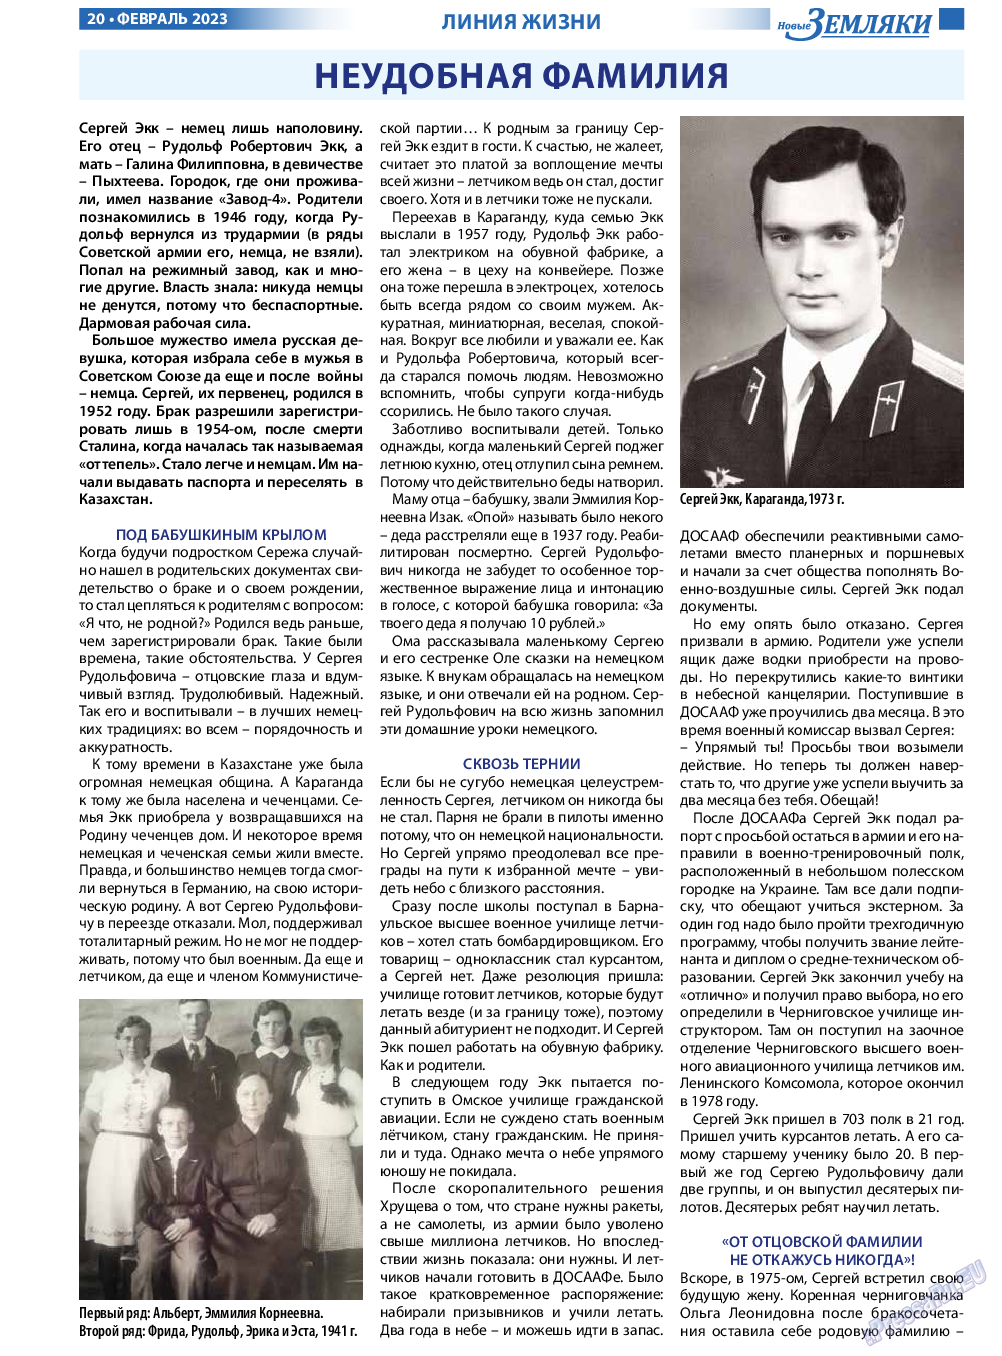 Новые Земляки, газета. 2023 №2 стр.20